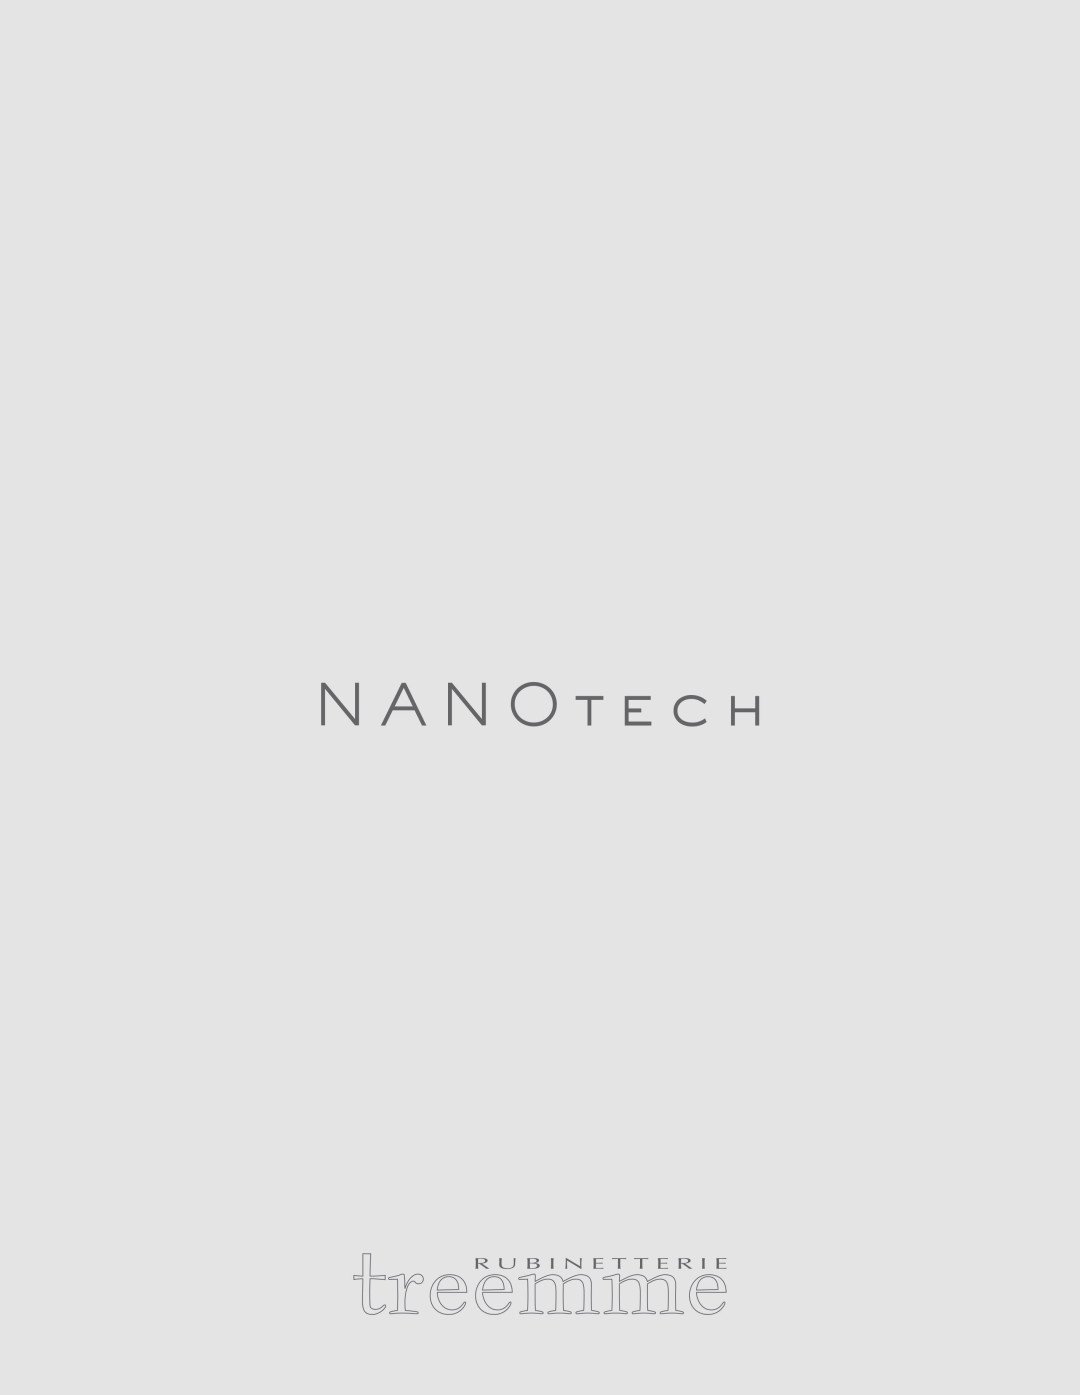 Nanotech